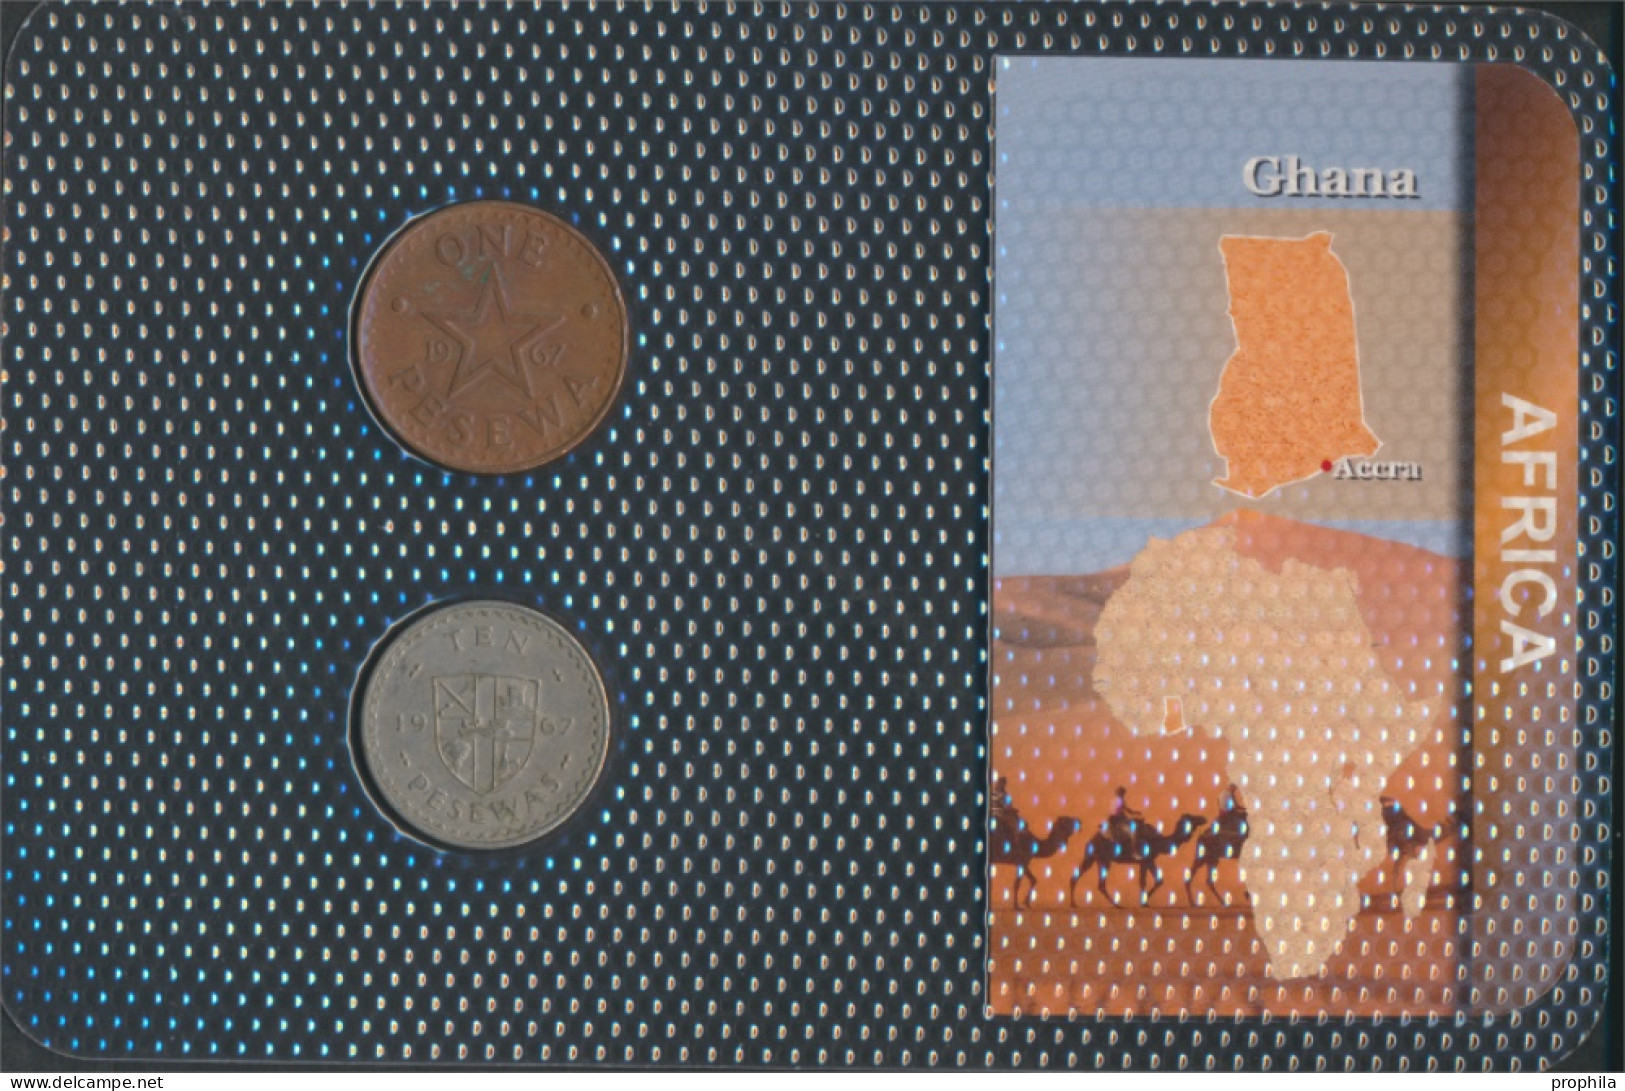 Ghana Sehr Schön Kursmünzen Sehr Schön Ab 1967 1 Pesewas Bis 10 Pesewas (10092177 - Ghana